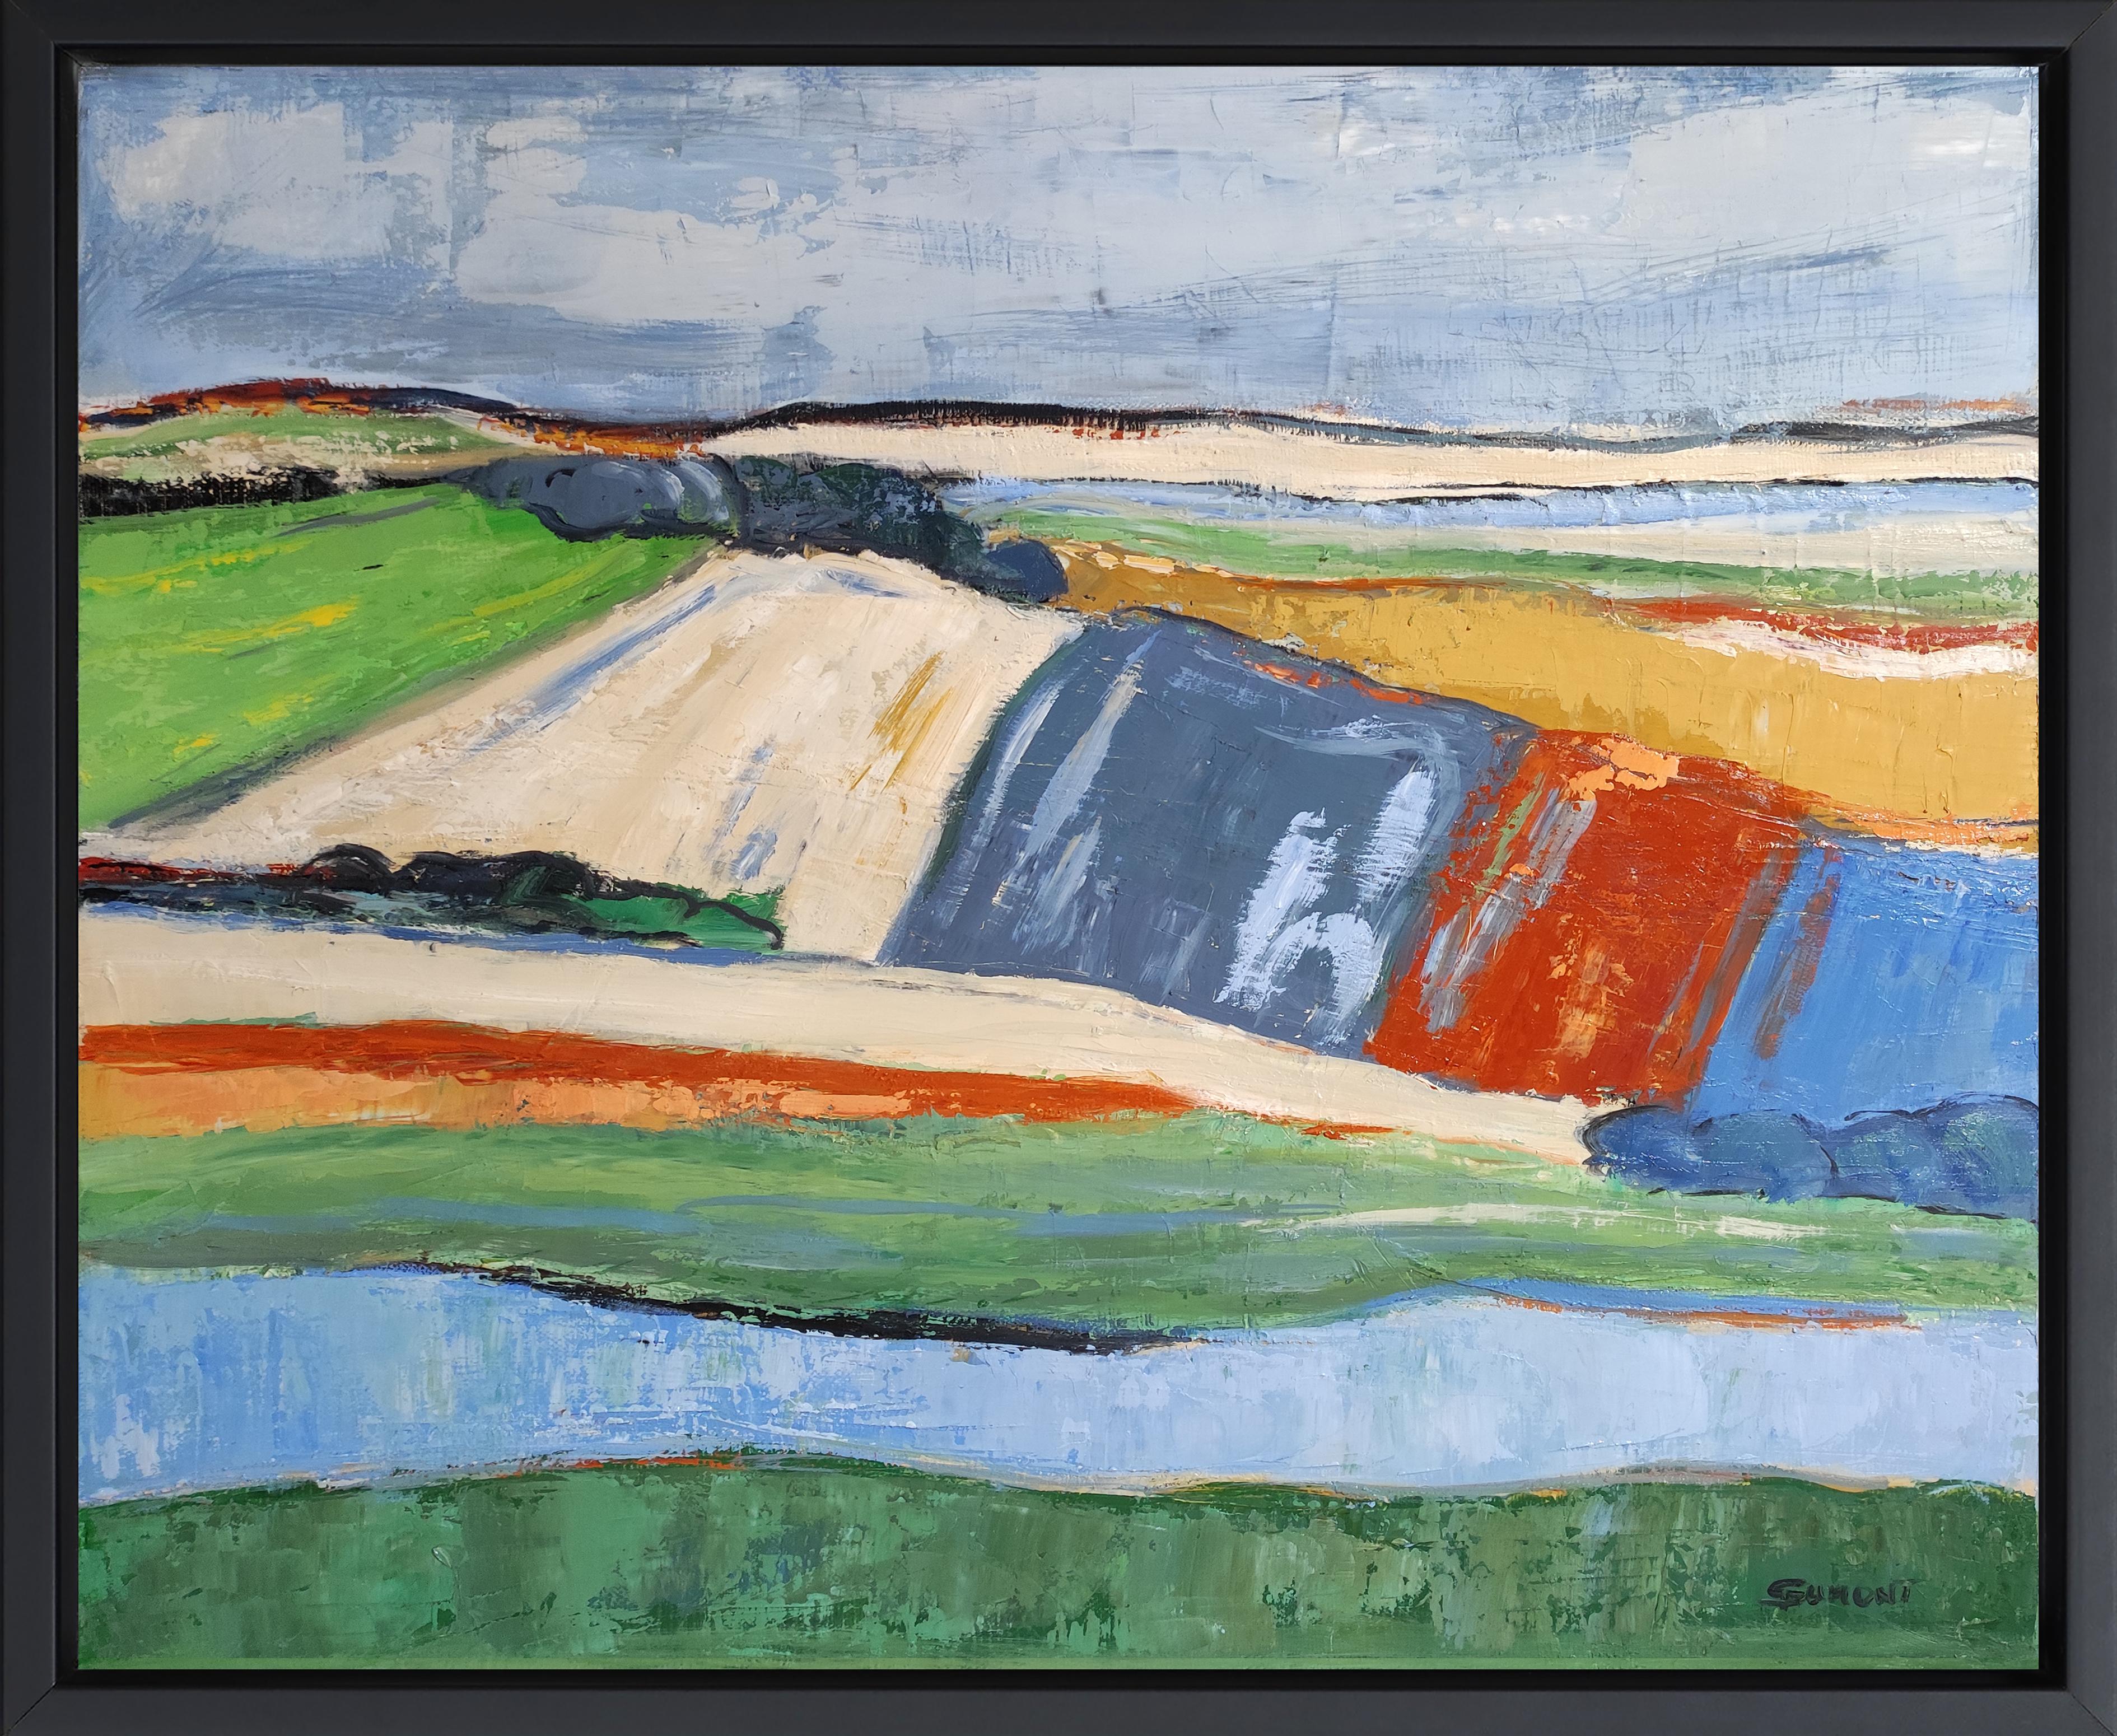 Landscape Painting SOPHIE DUMONT - Fields in April, paysage abstrait, bleu, vert, expressionniste, contemporain